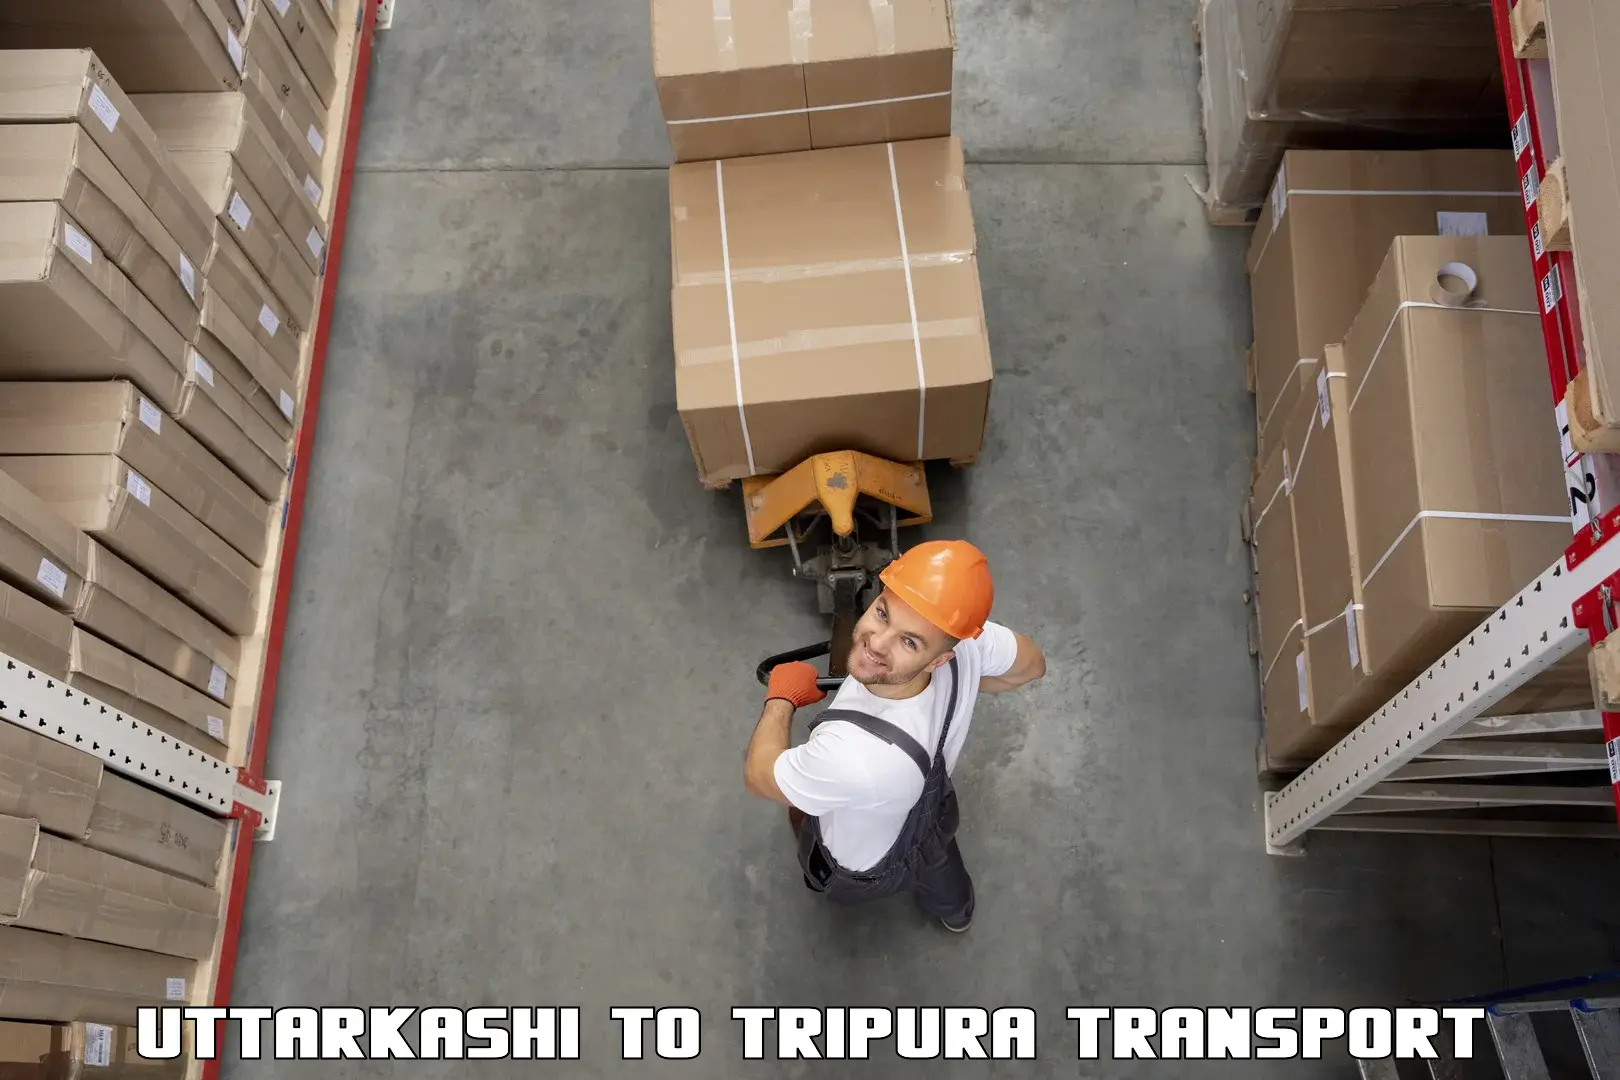 Luggage transport services Uttarkashi to NIT Agartala